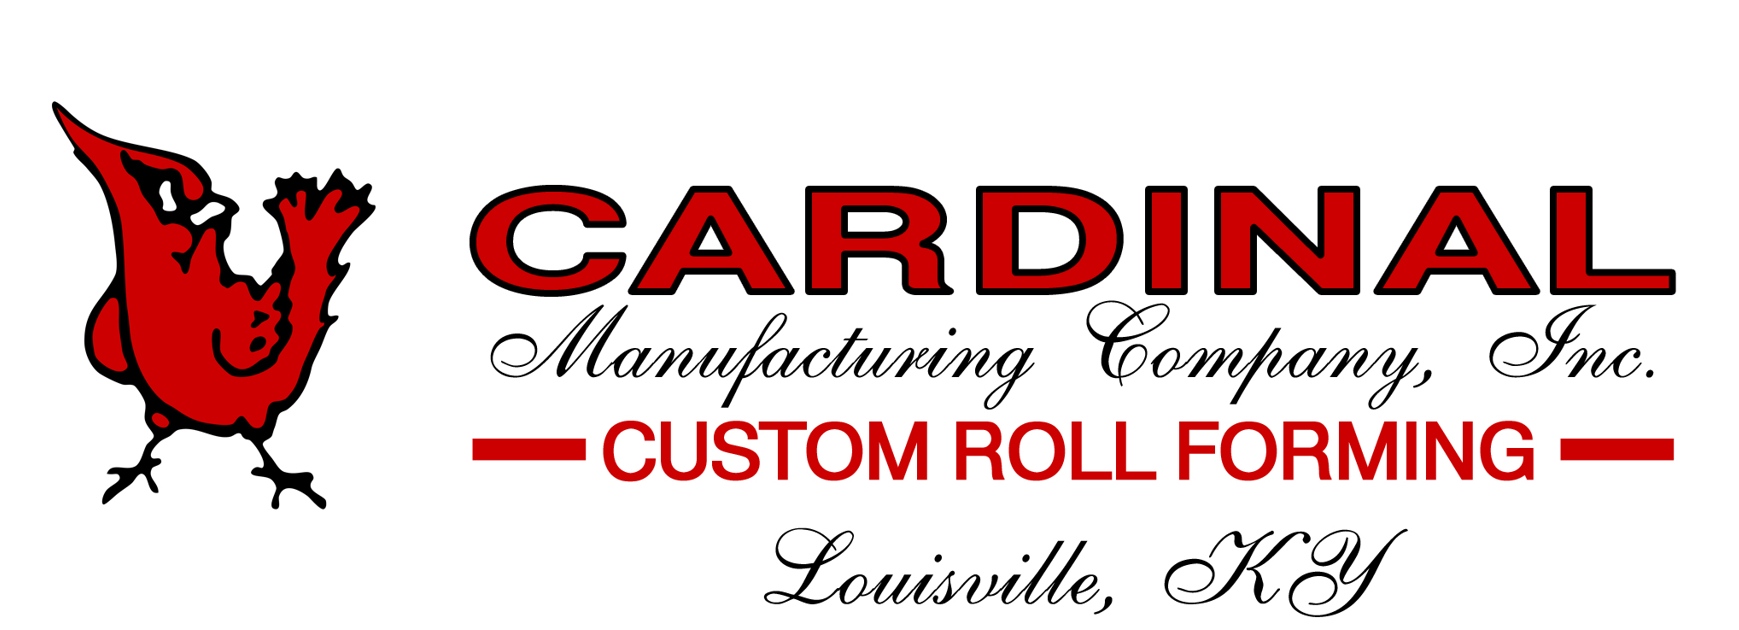 Cardinal Manufacturing Logo